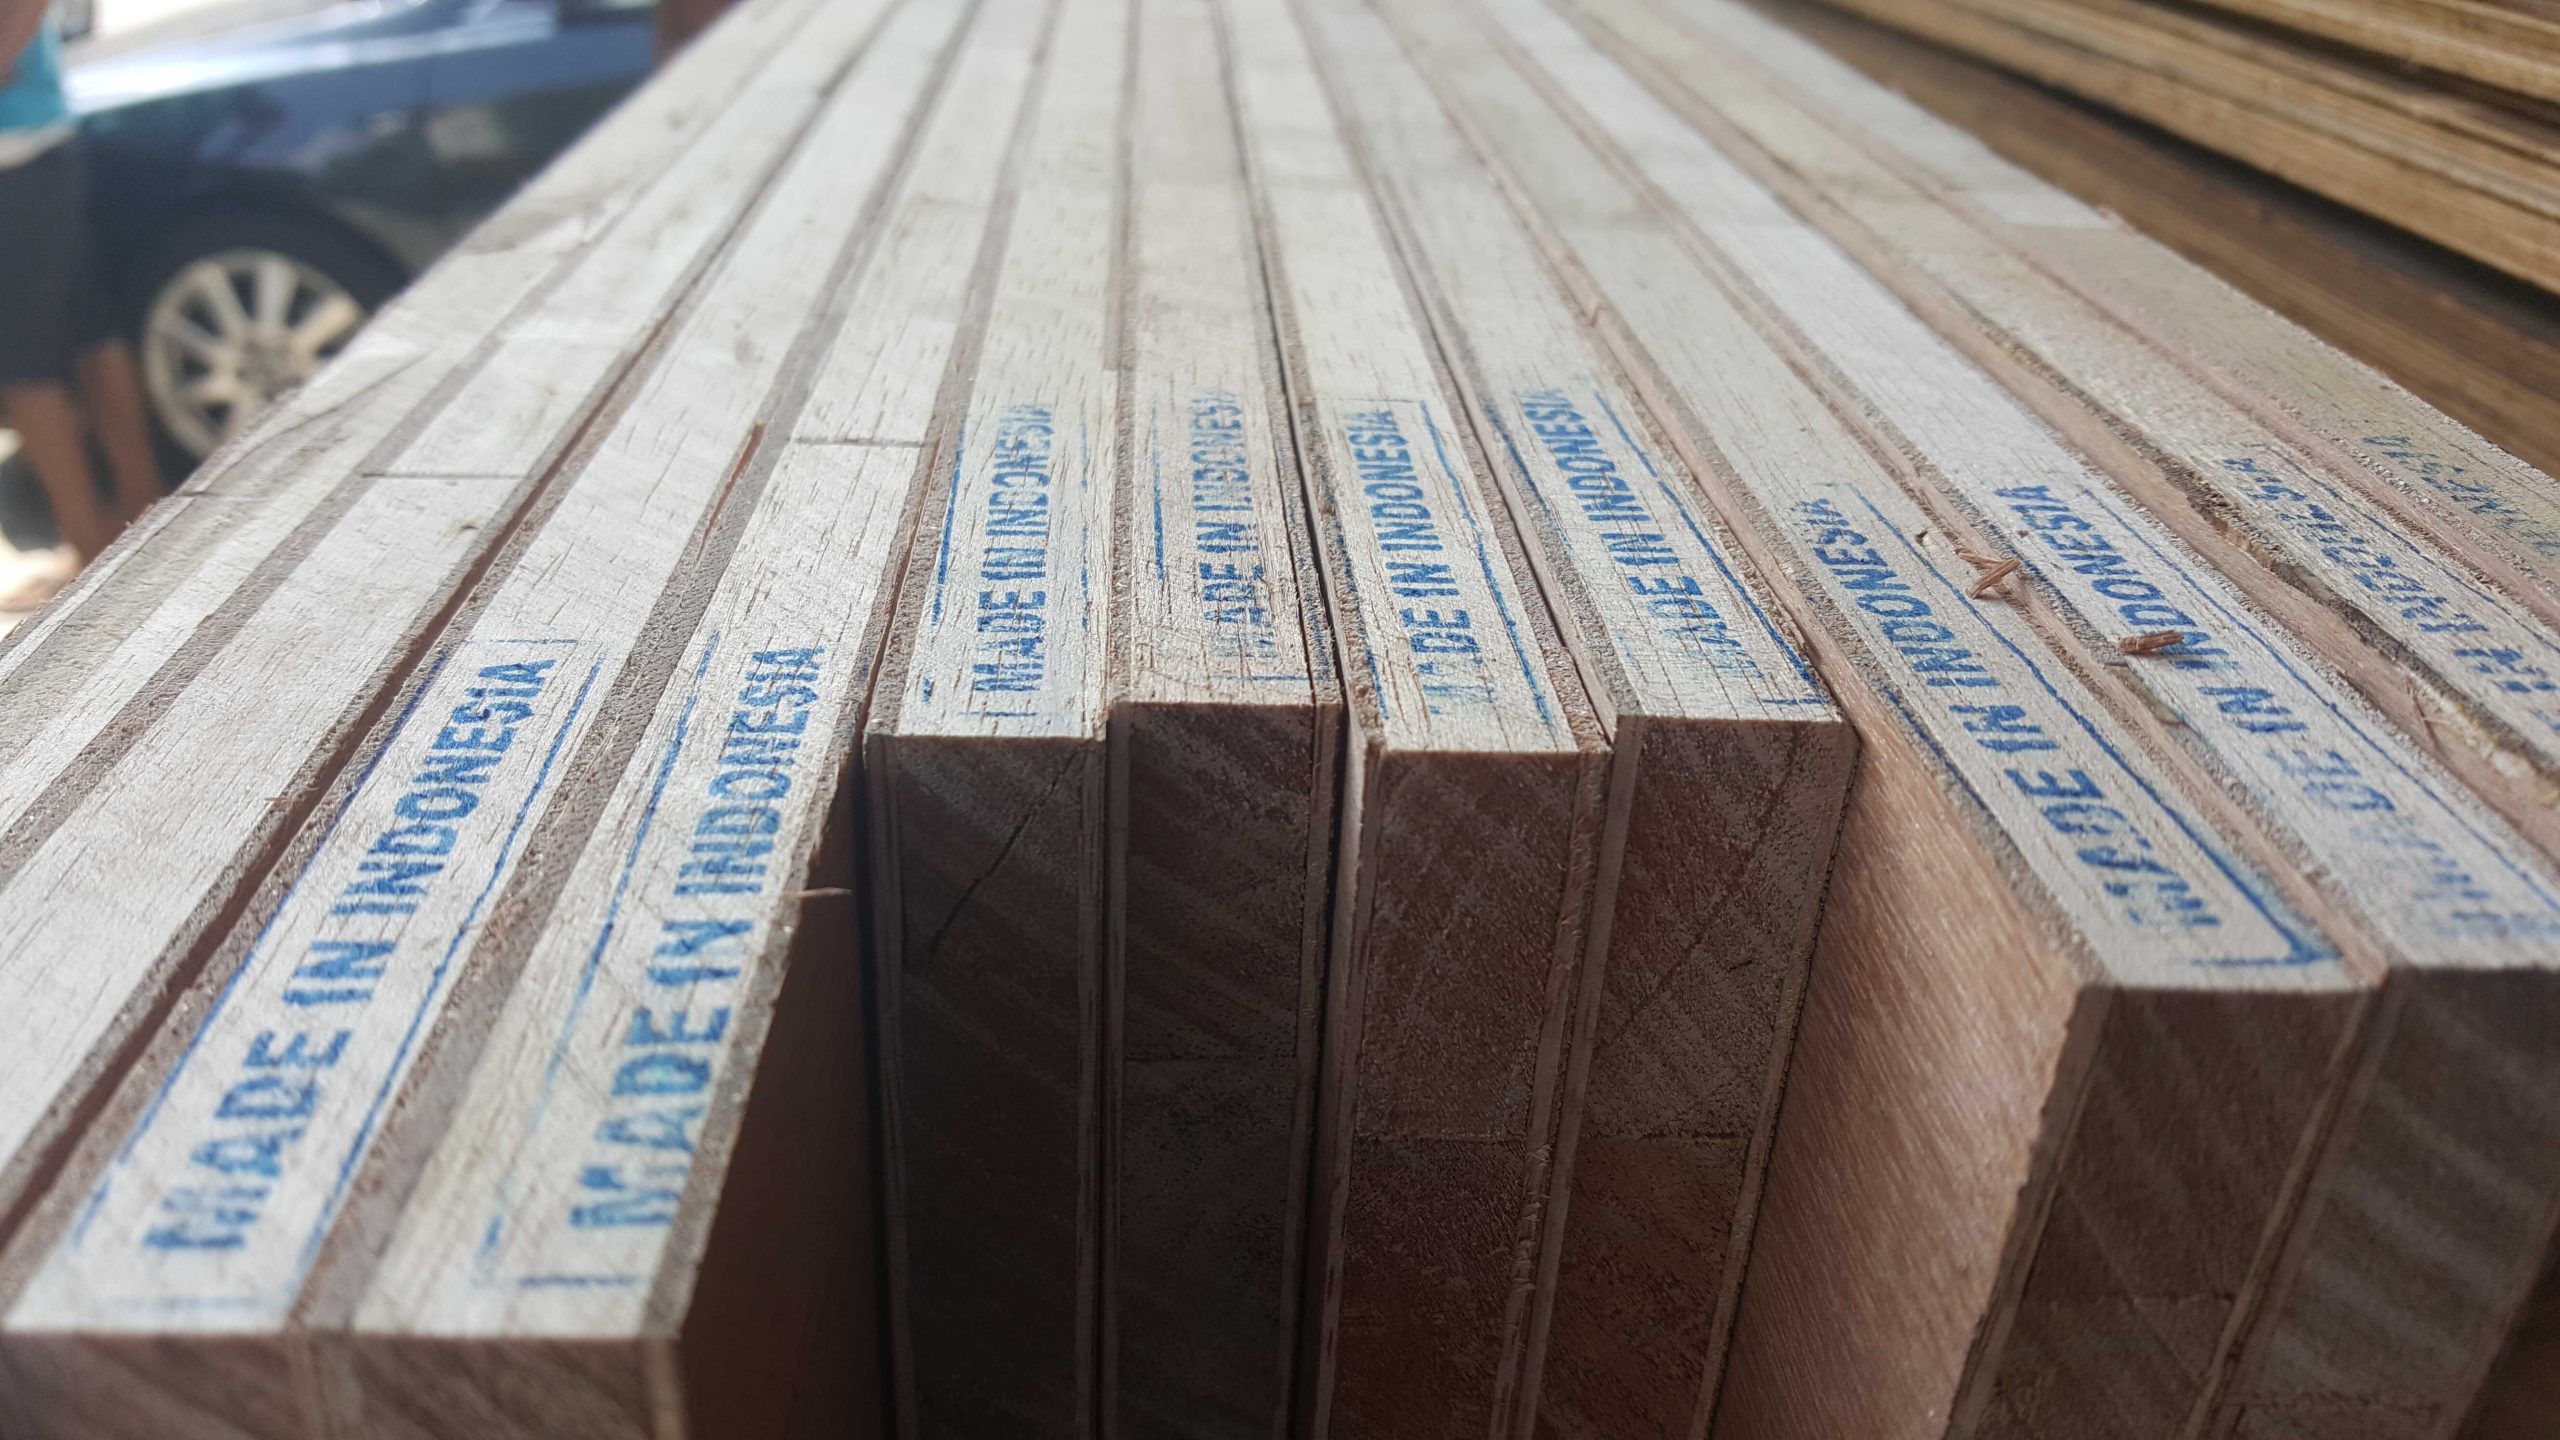 Indonesia Blockboard - Quality Wood Products from PT. Bintang Sakti Sentosa & Bintang Sakti Plywood. Blockboard Indonesia - Produk Kayu Berkualitas dari PT. Bintang Sakti Sentosa & Bintang Sakti Plywood